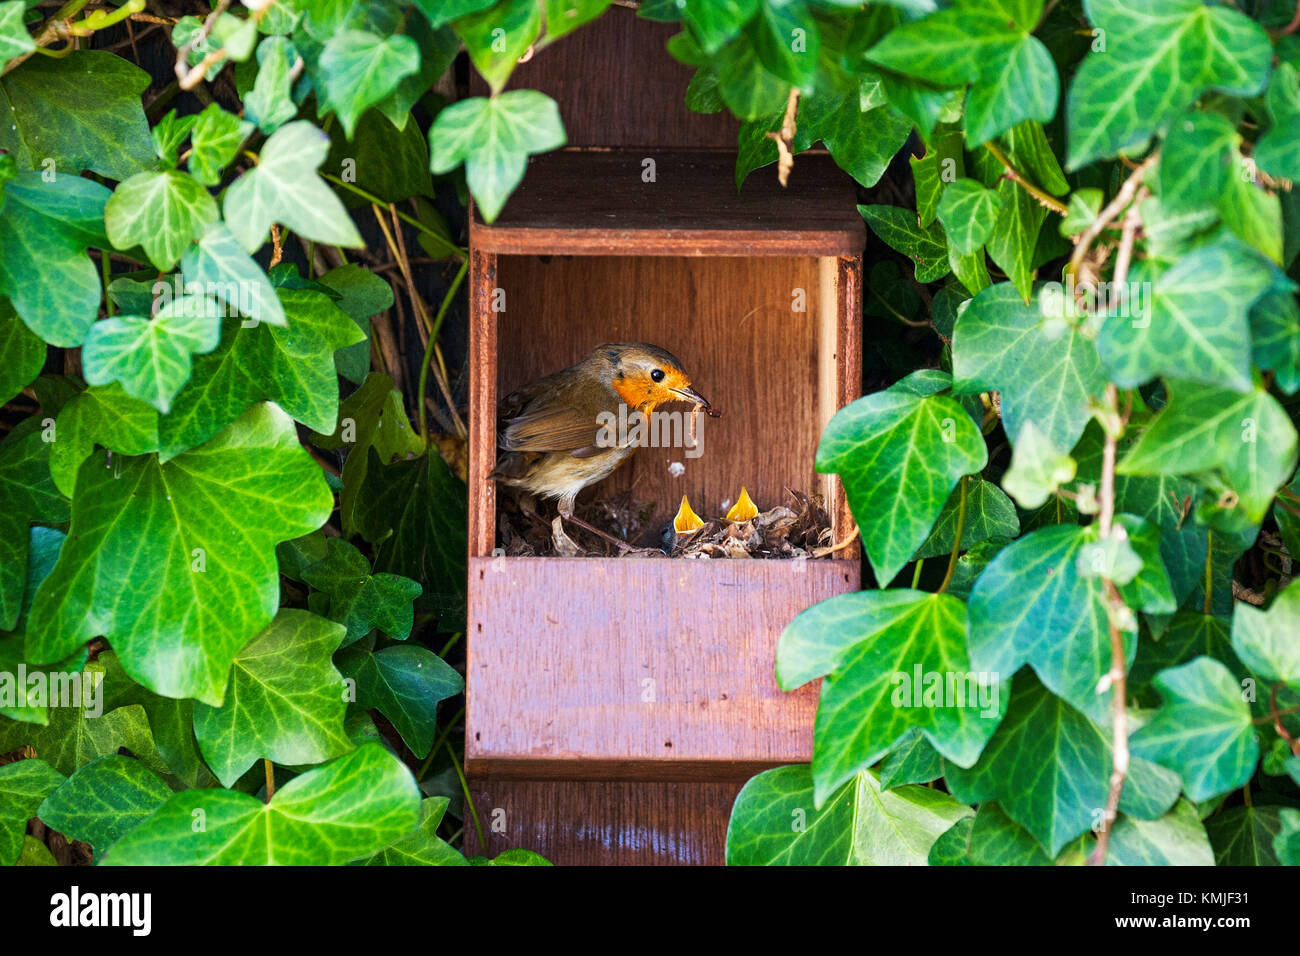 Europäische robin Erithacus rubecula im Nest mit Nahrung für die Jungen im Nistkasten in einem Garten Ringwood Hampshire England Großbritannien Stockfoto